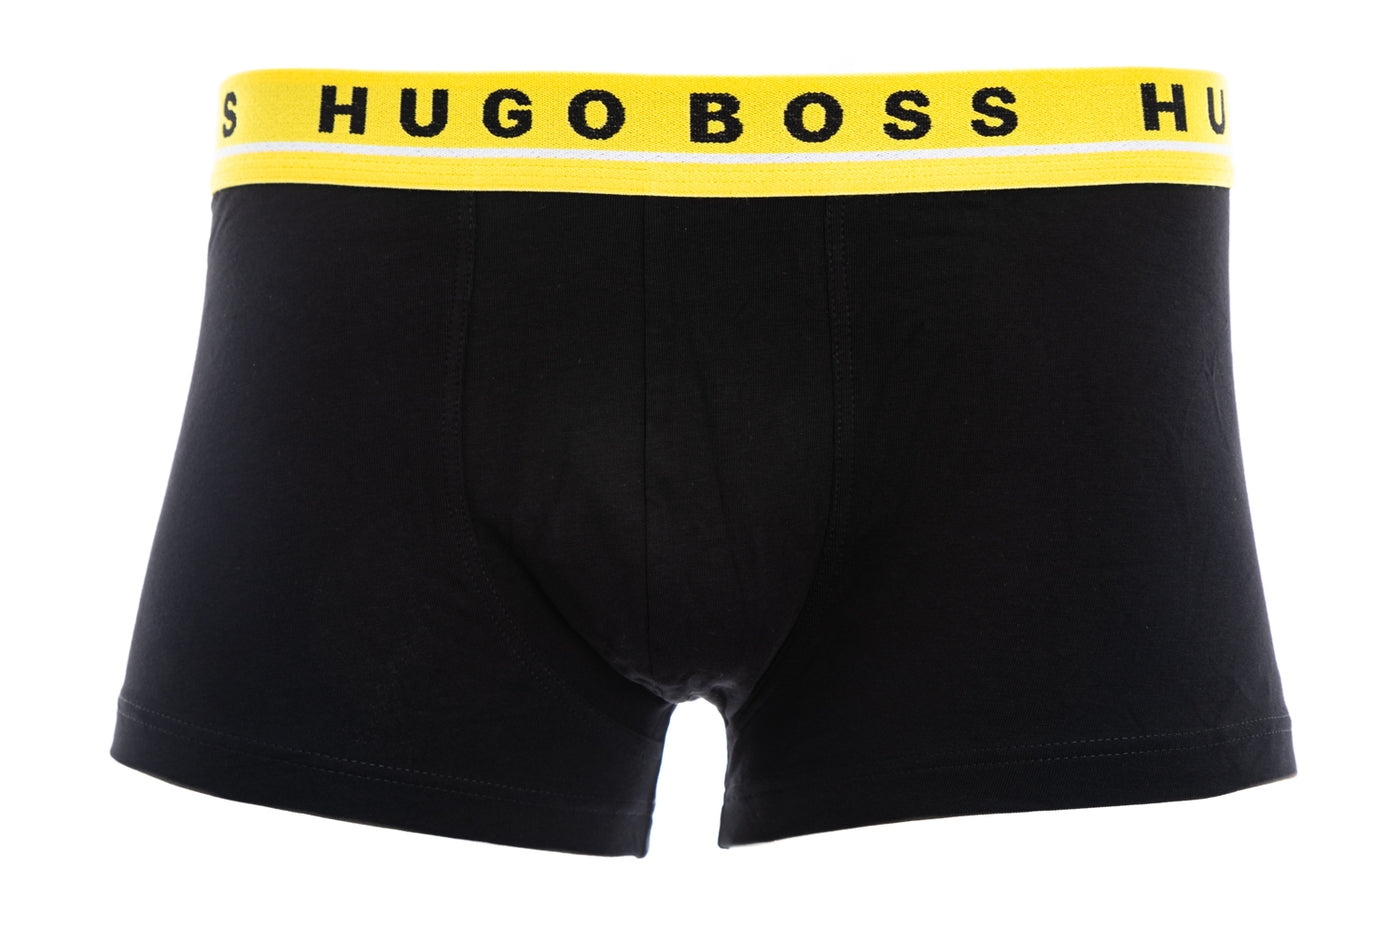 BOSS Trunk 3 Pack Underwear in Black